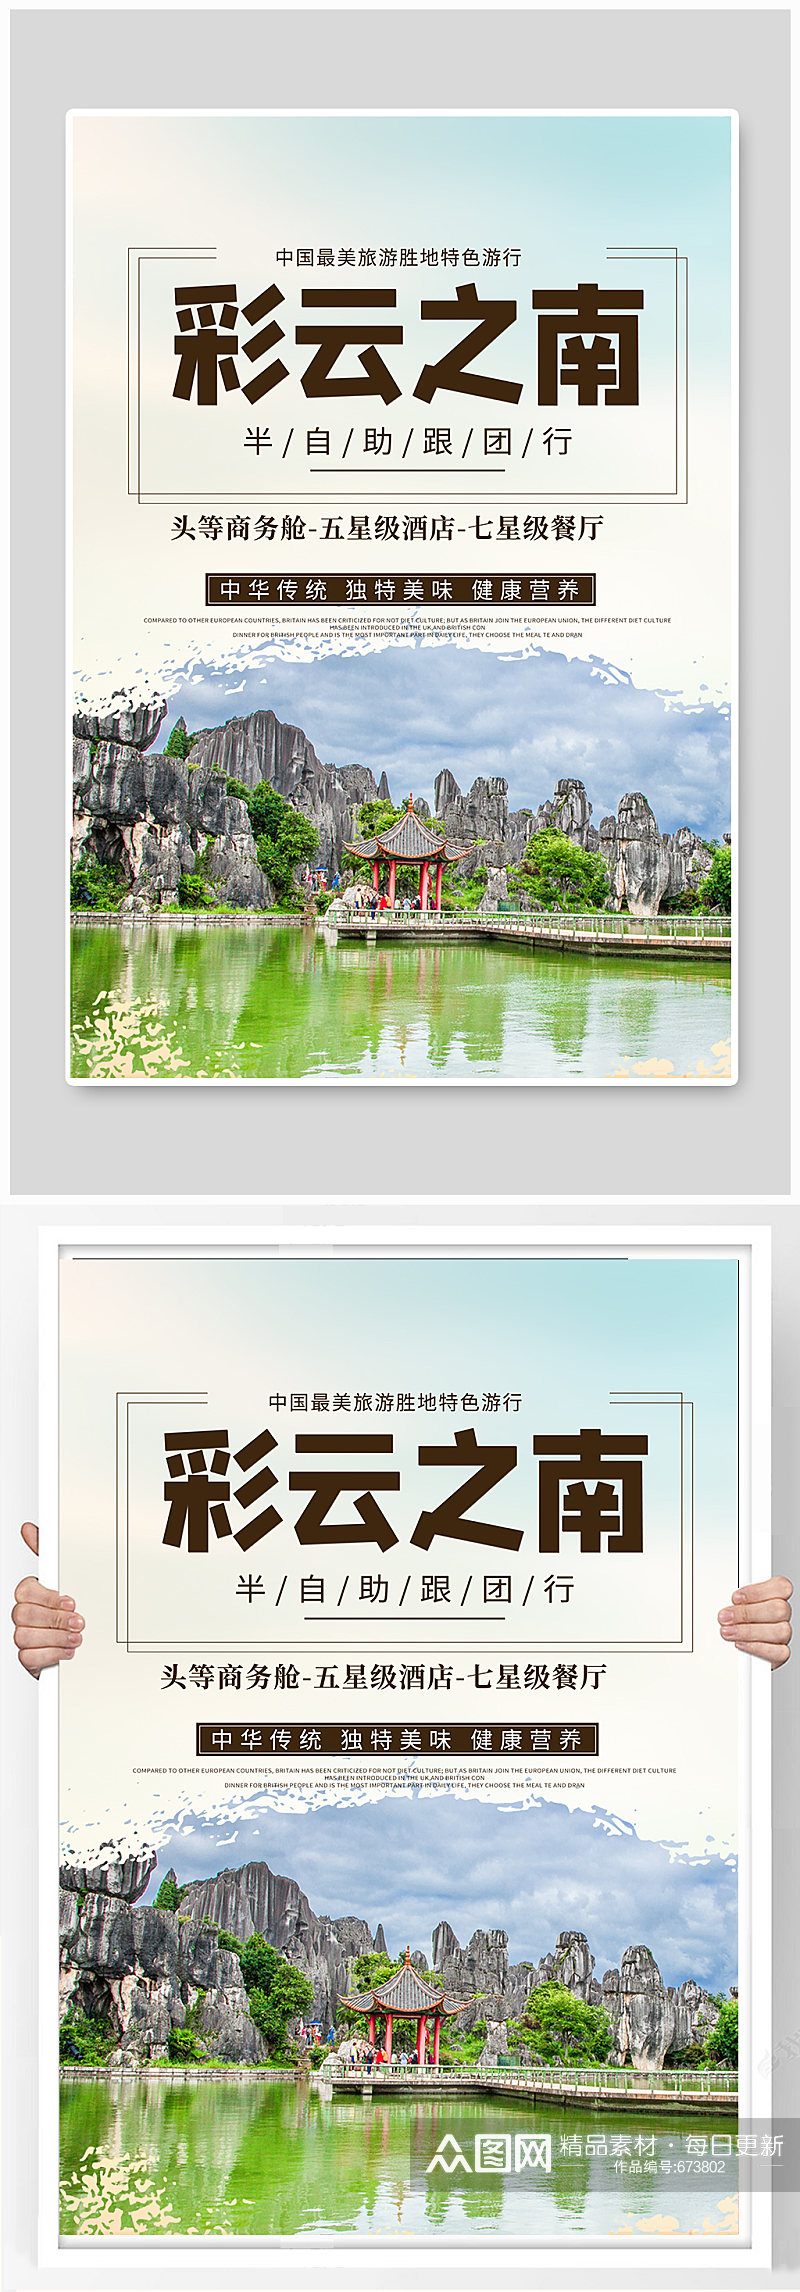 云南旅游简约活动宣传海报素材